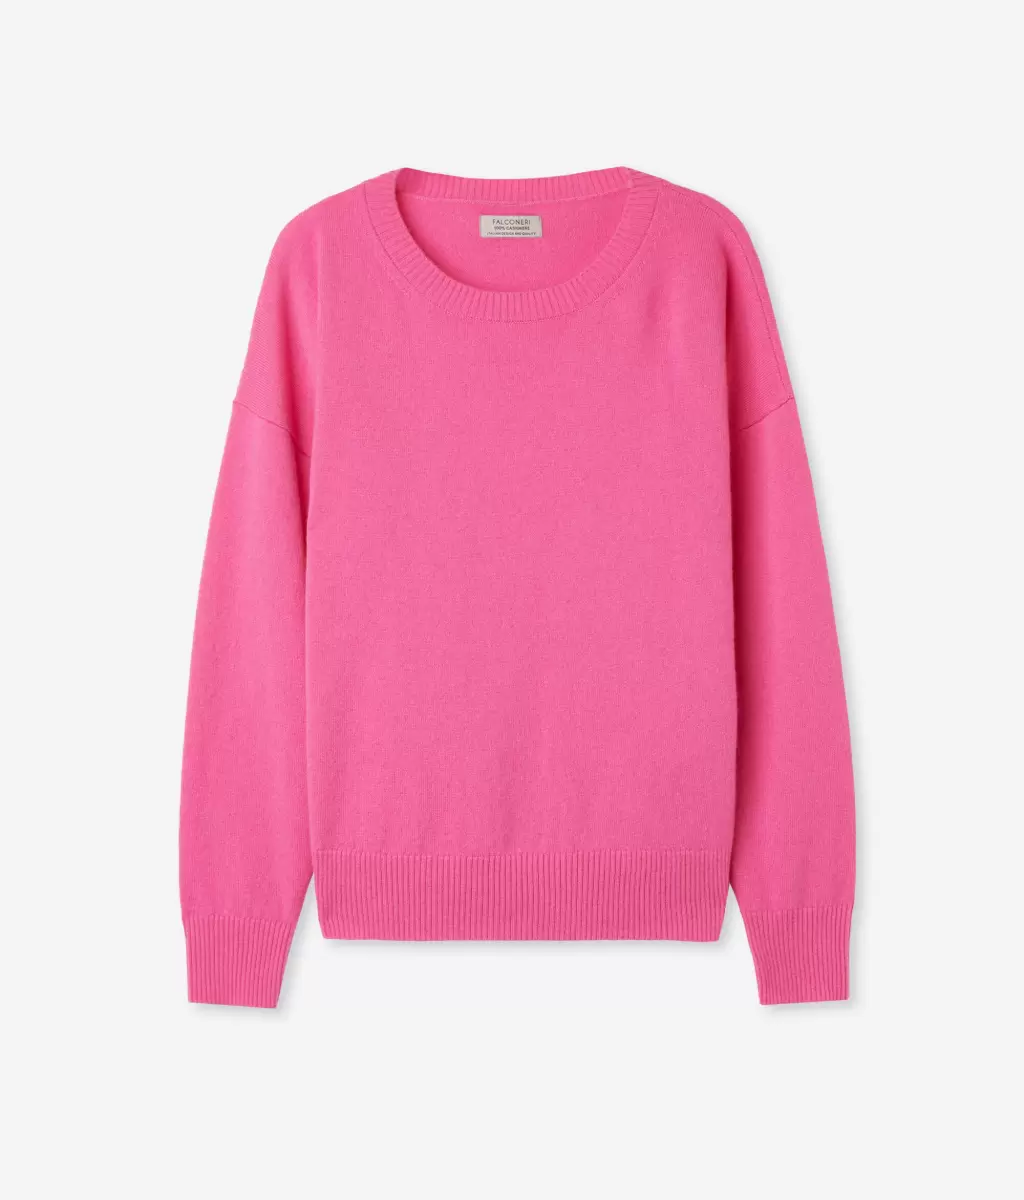 Pink Kobieta Swetry Z Okrągłym Dekoltem Sweter Z Okrągłym Dekoltem I Rozcięciami Z Kaszmiru Ultrasoft Falconeri - 4